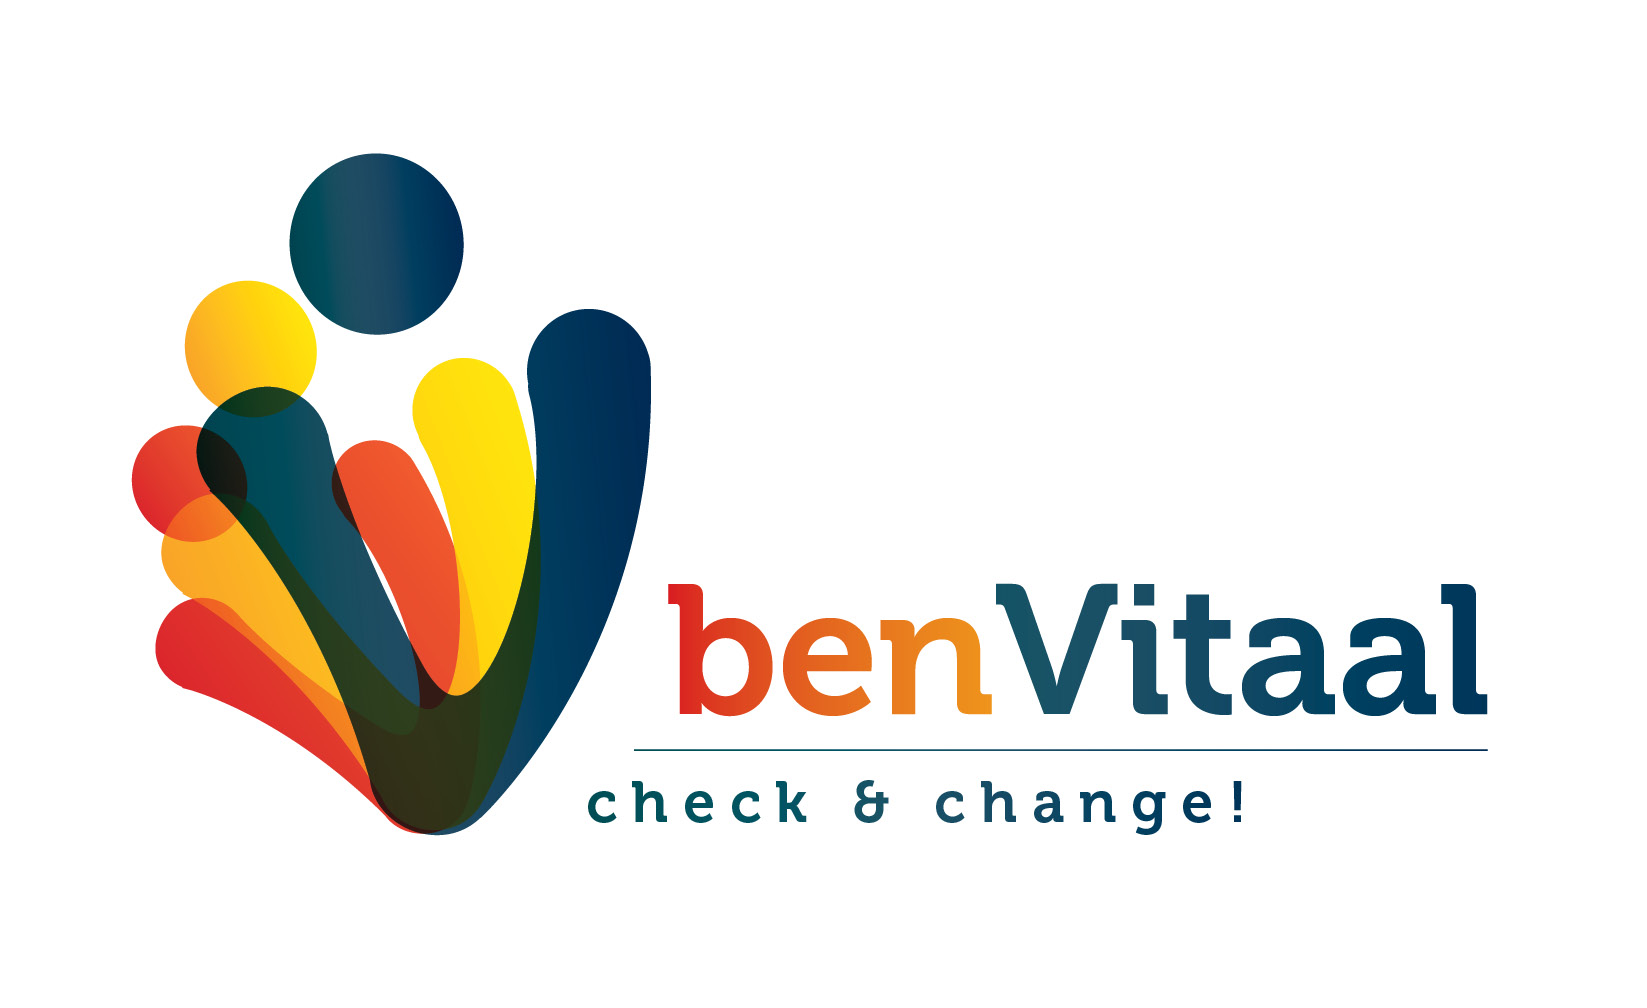 Logo van benVitaal, check & change